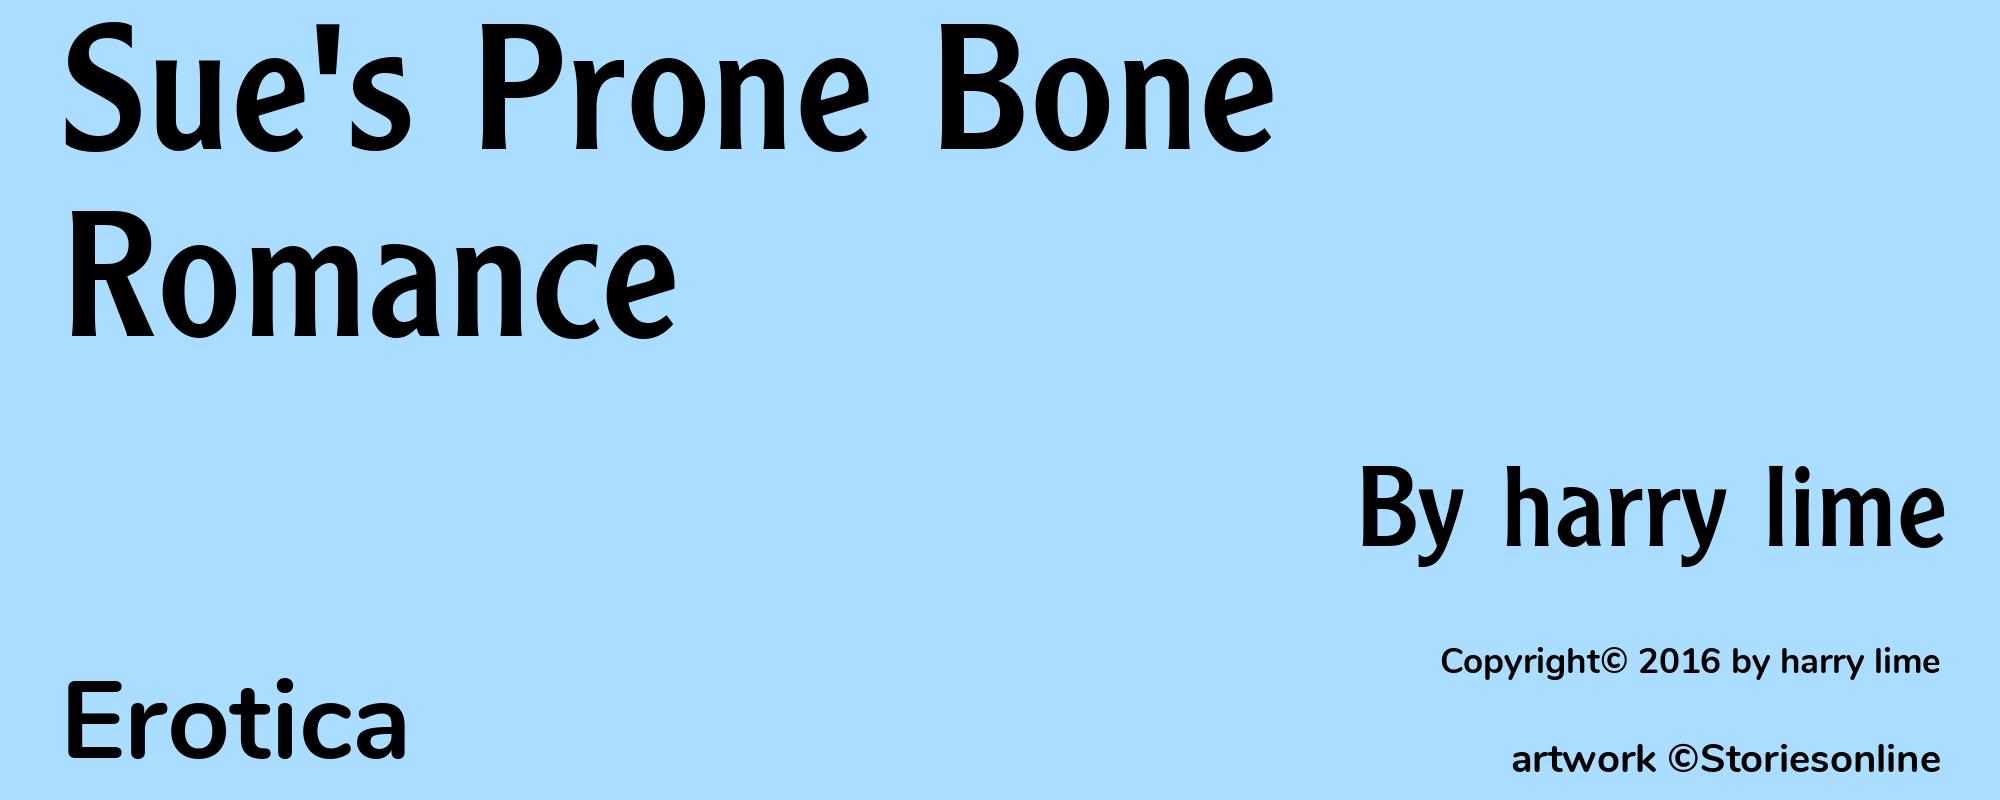 Sue's Prone Bone Romance - Cover